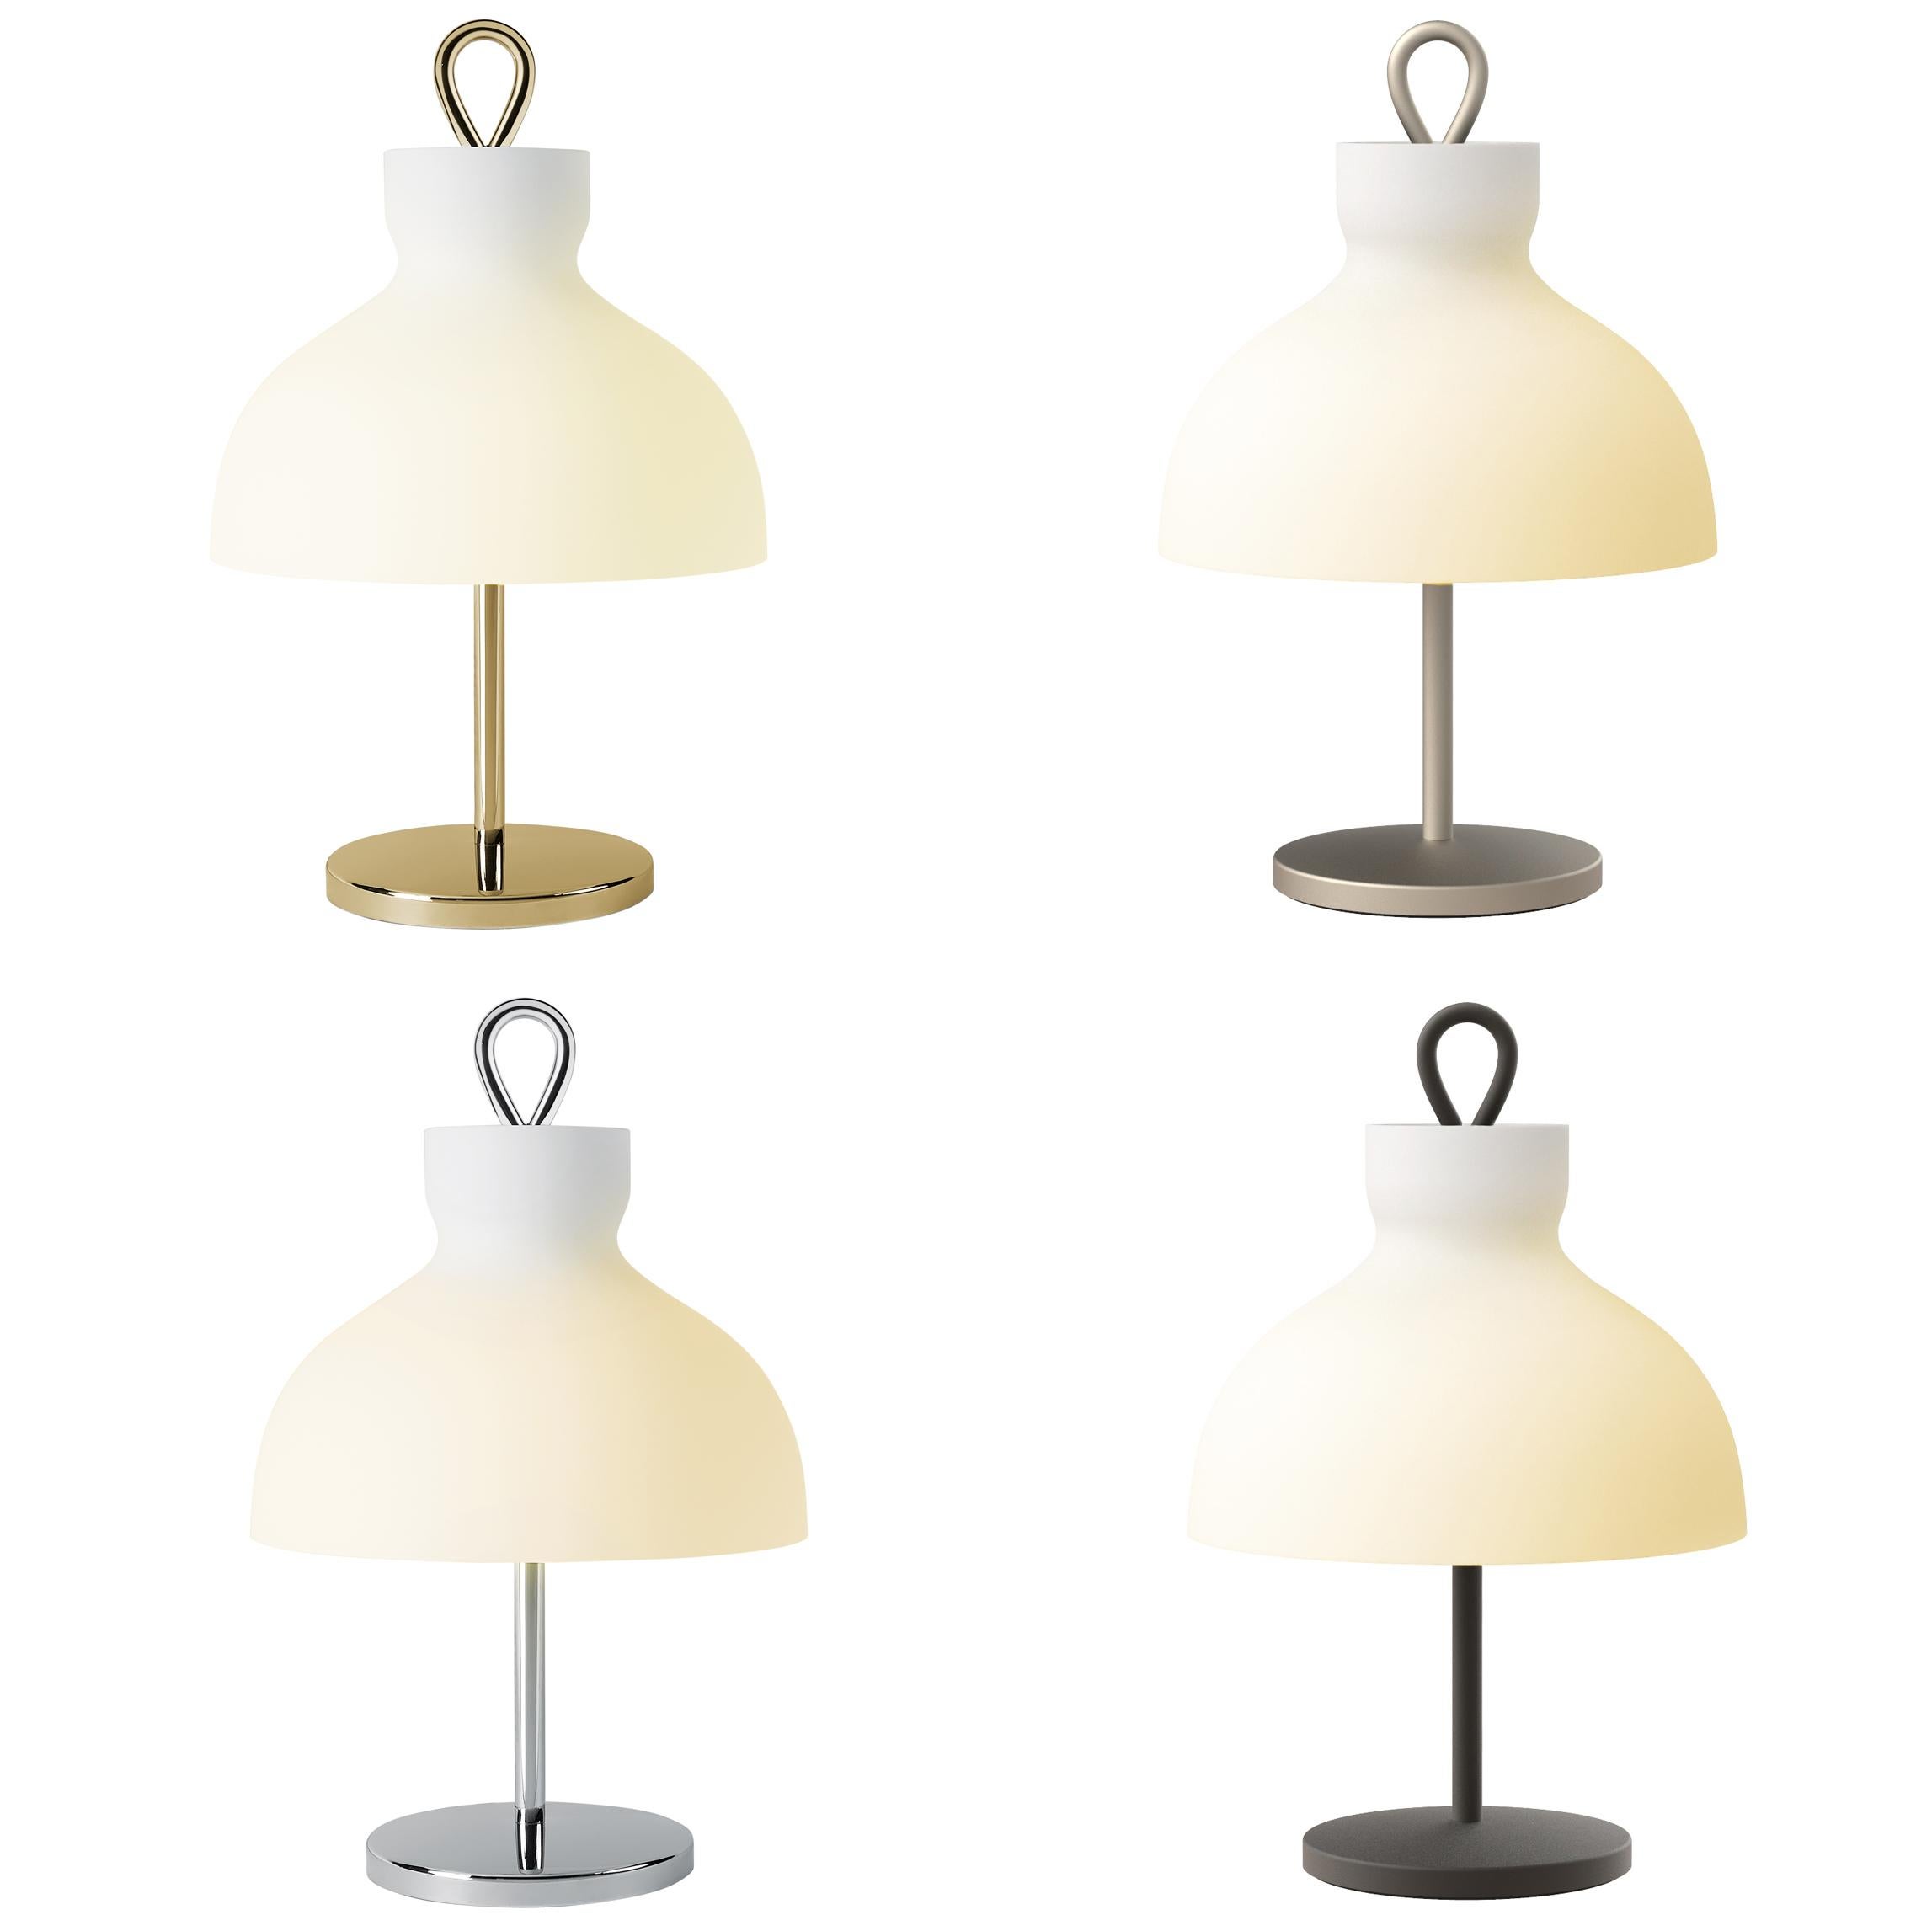 Ignazio Gardella 'Arenzano Bassa' Table Lamp in Glass and Satin Nickel For Sale 1